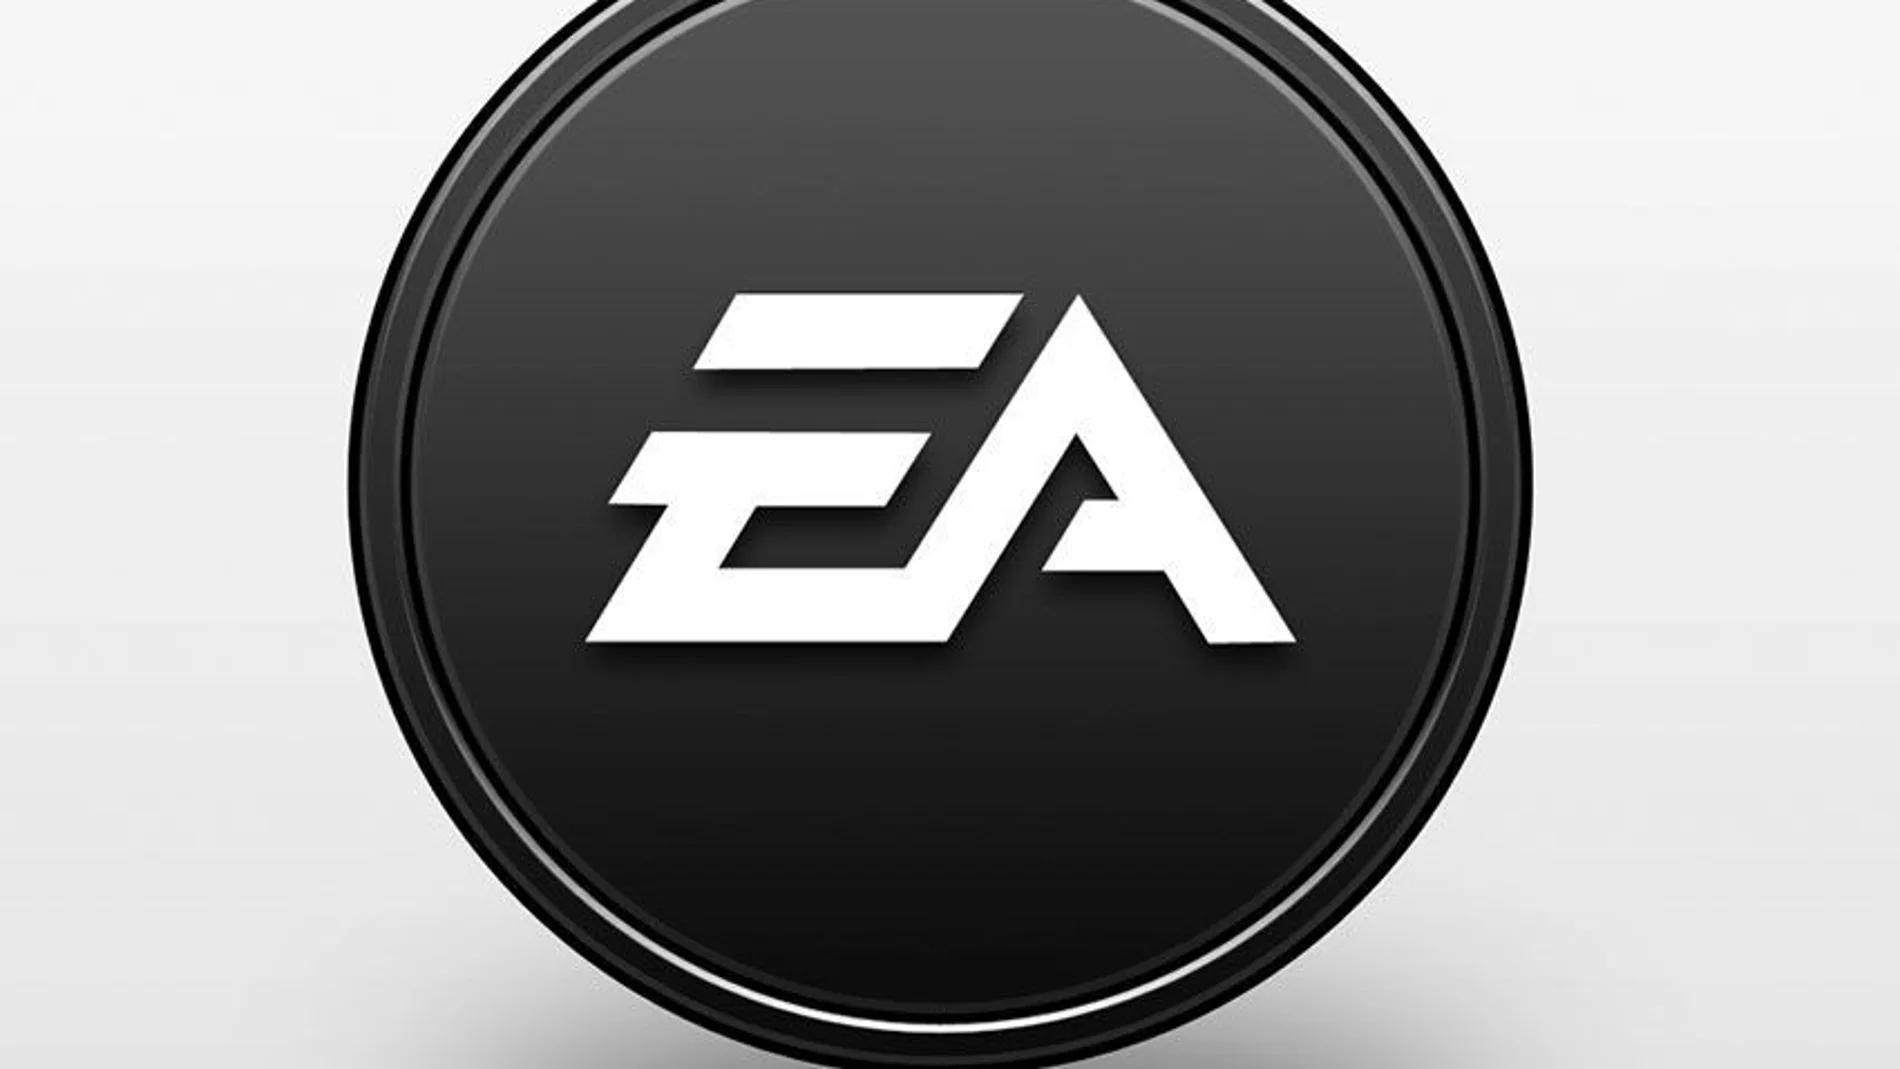 Logotipo de EA